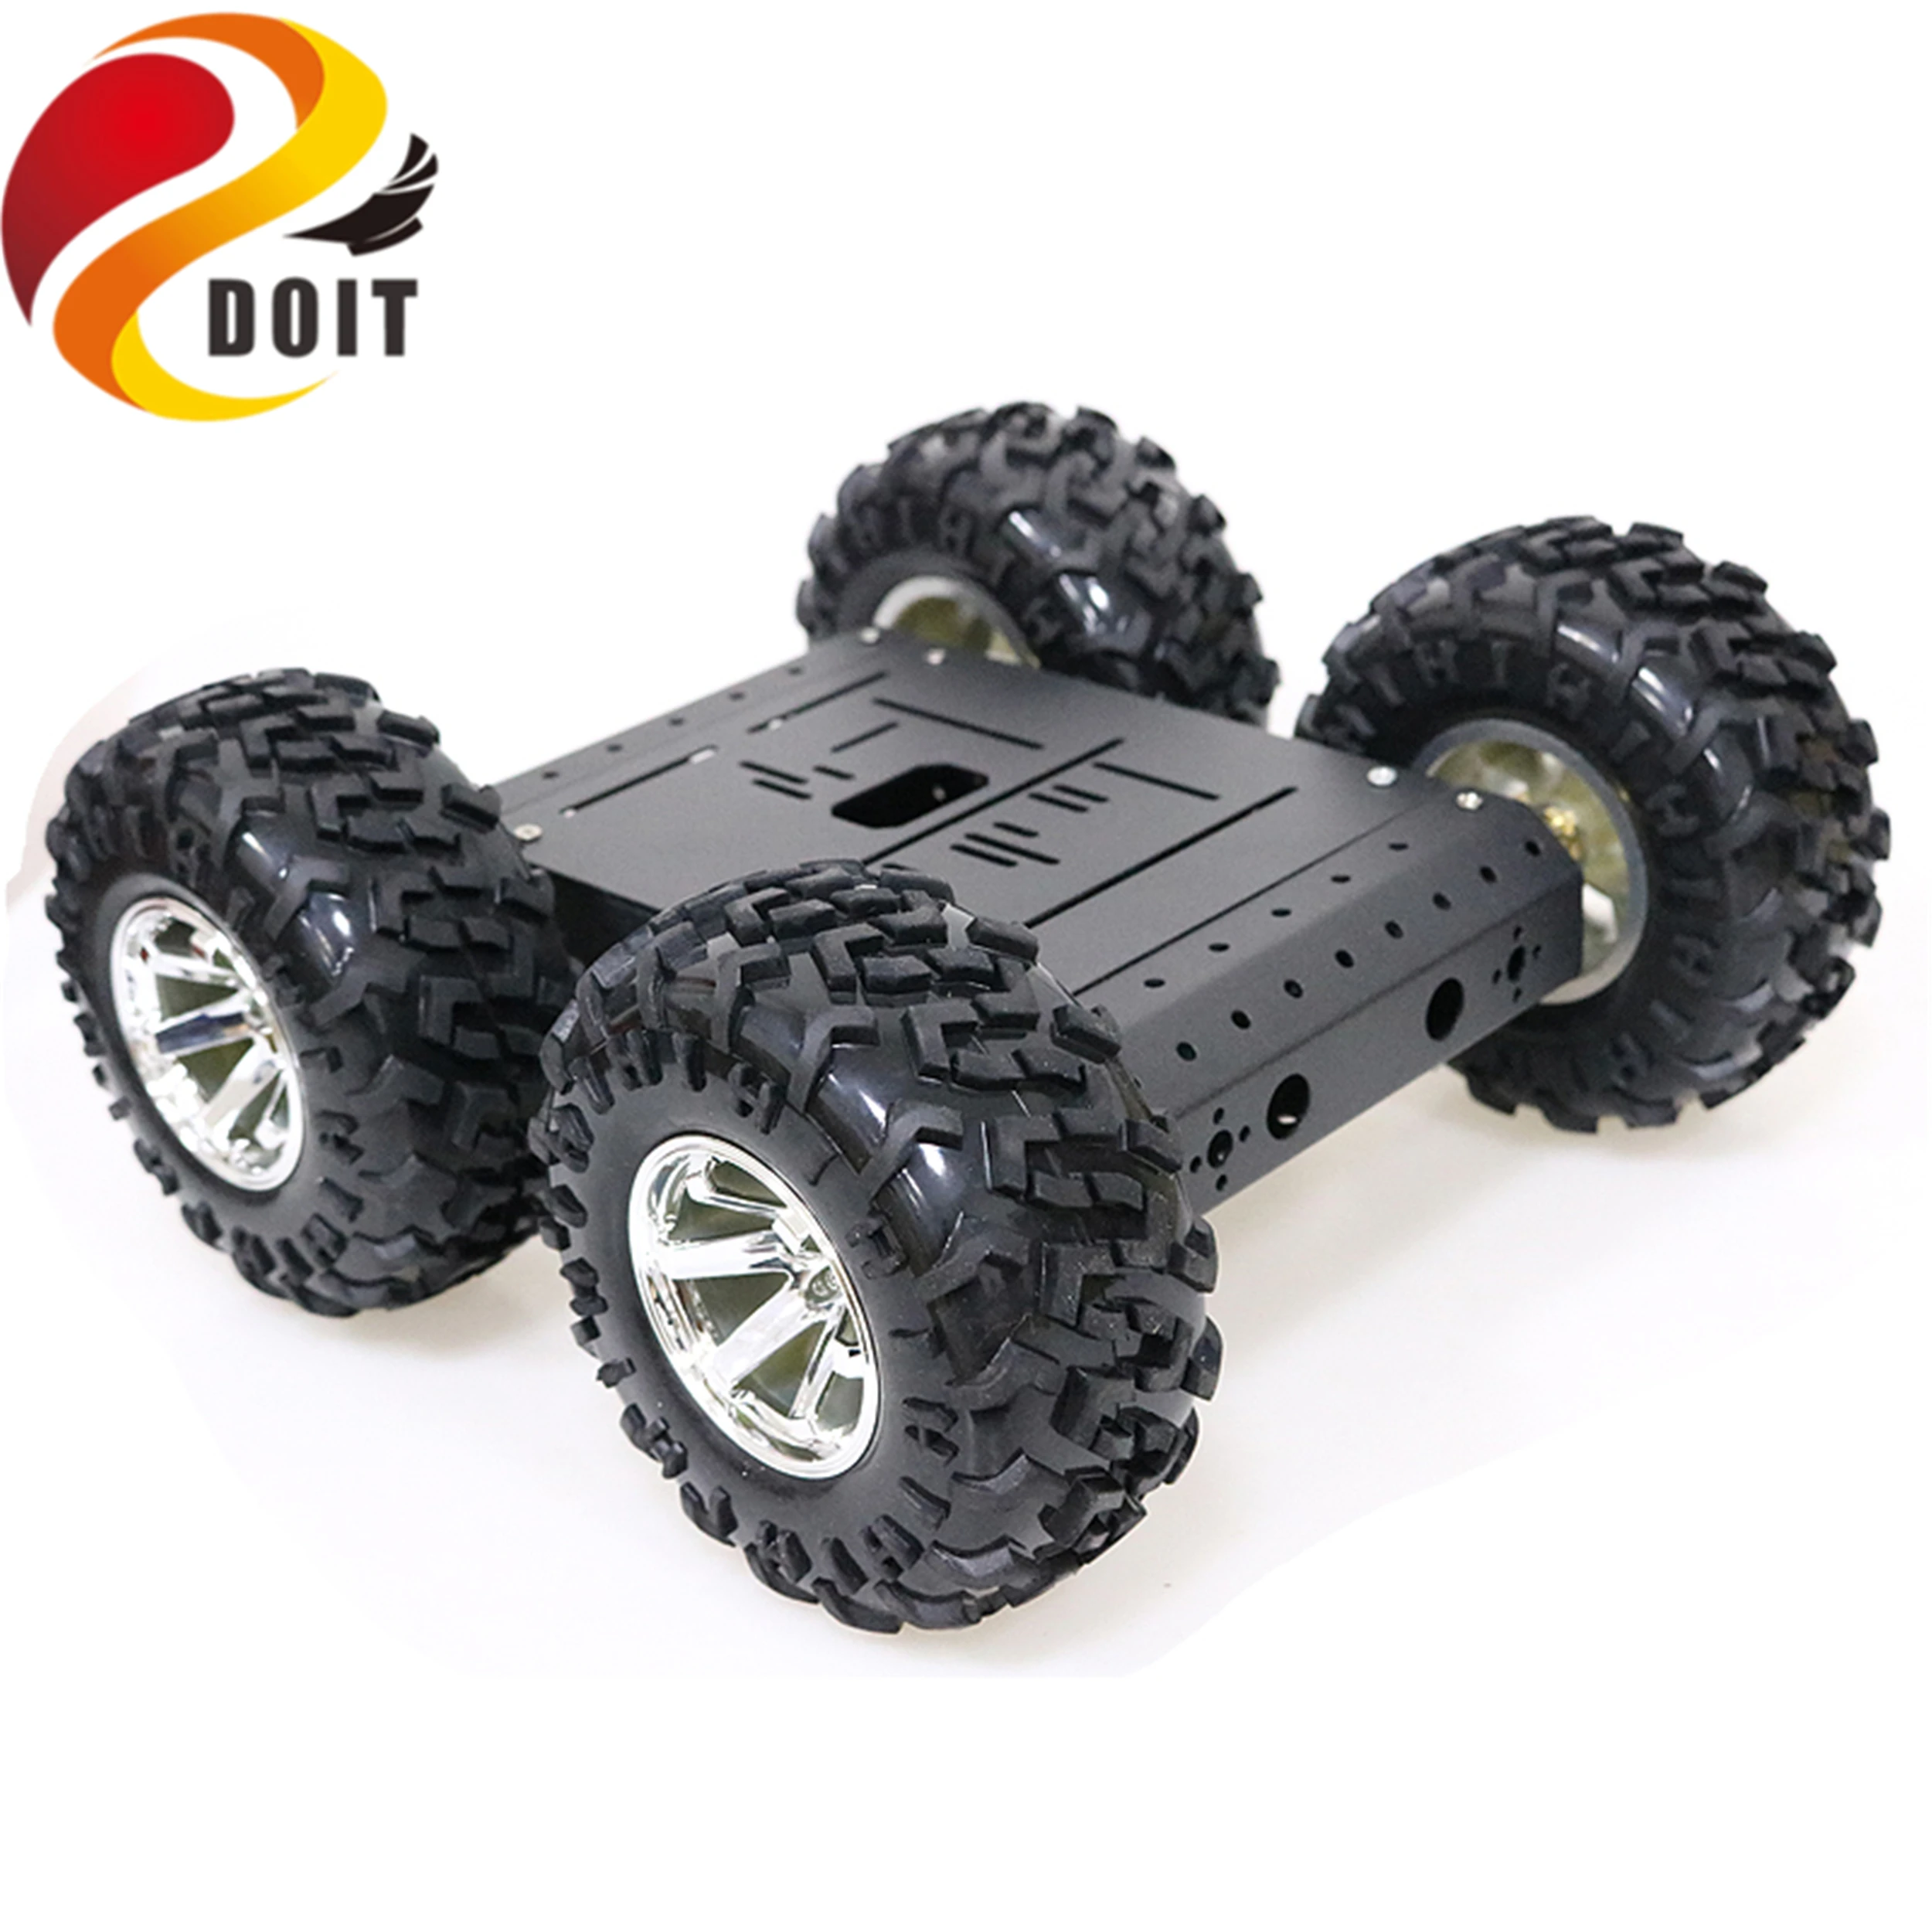 SZDOIT 4WD металлический умный робот-шасси автомобиля Комплект 130 мм резиновые колеса с высоким крутящим моментом двигатель постоянного тока тяжелая нагрузка DIY для обучения Arduino DIY